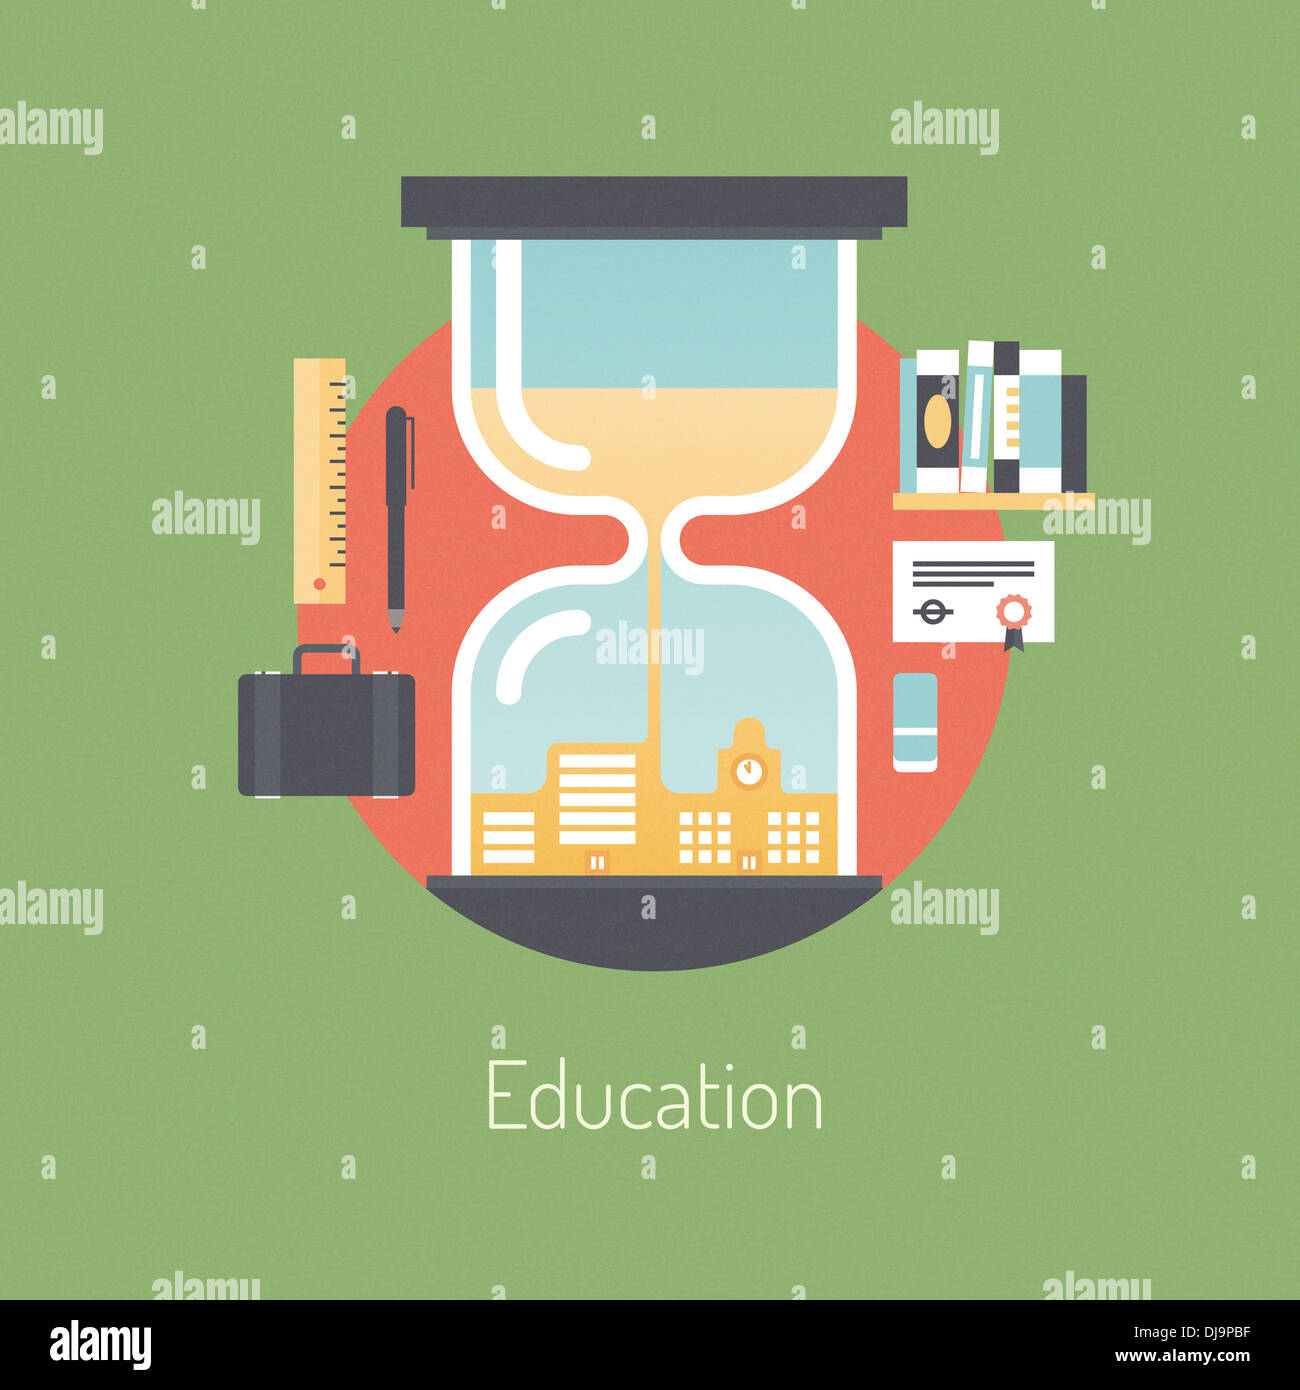 Modèle plat illustration concept de l'affiche de la formation et de l'expérience et l'apprentissage de nouvelles connaissances à l'école et les objets métier Banque D'Images